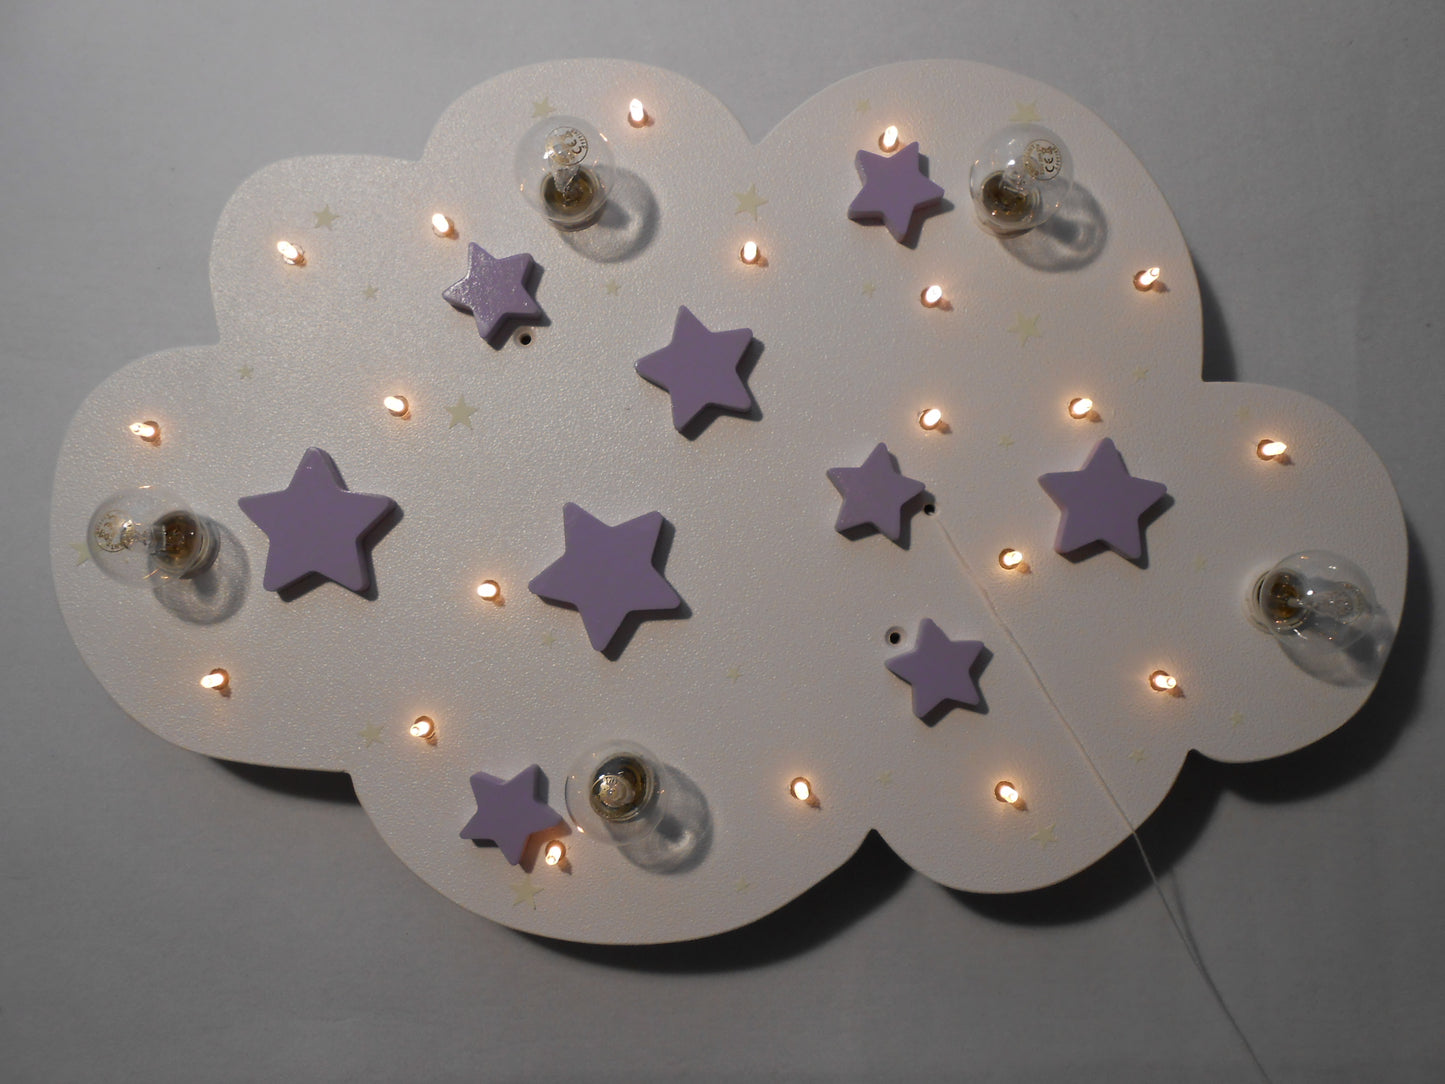 LED ceiling light "STARS"